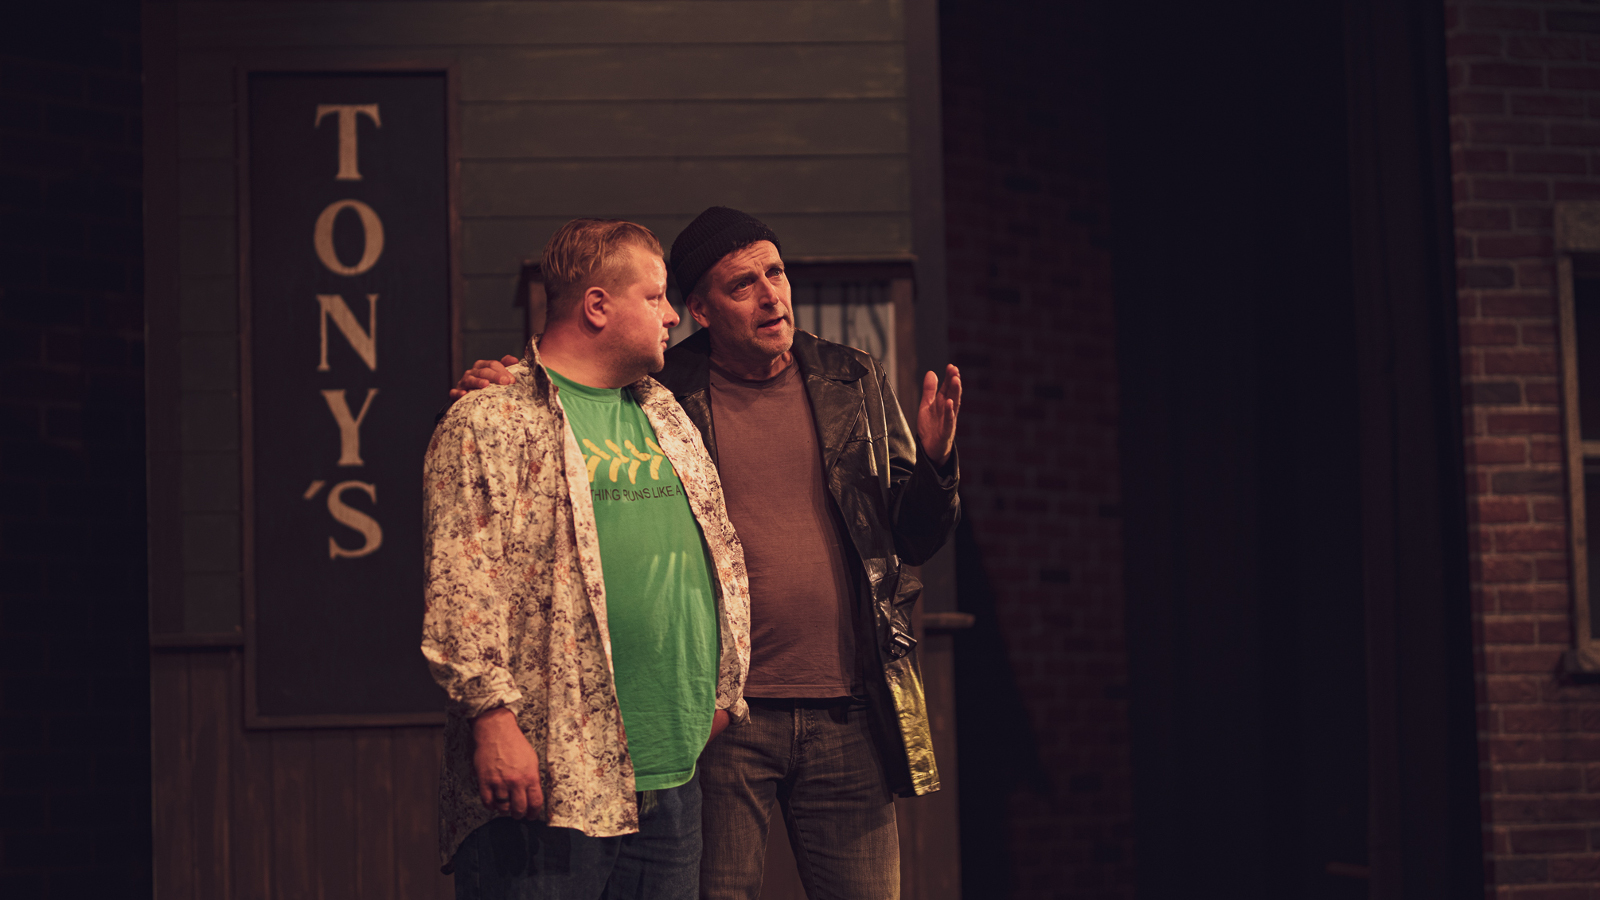 Kuvassa on kaksi miestä keskustelemassa ja taustalla näkyy ylhäältä alaspäin teksti Tony's.  Toisella miehistä on vaalean vihreä t-paita.